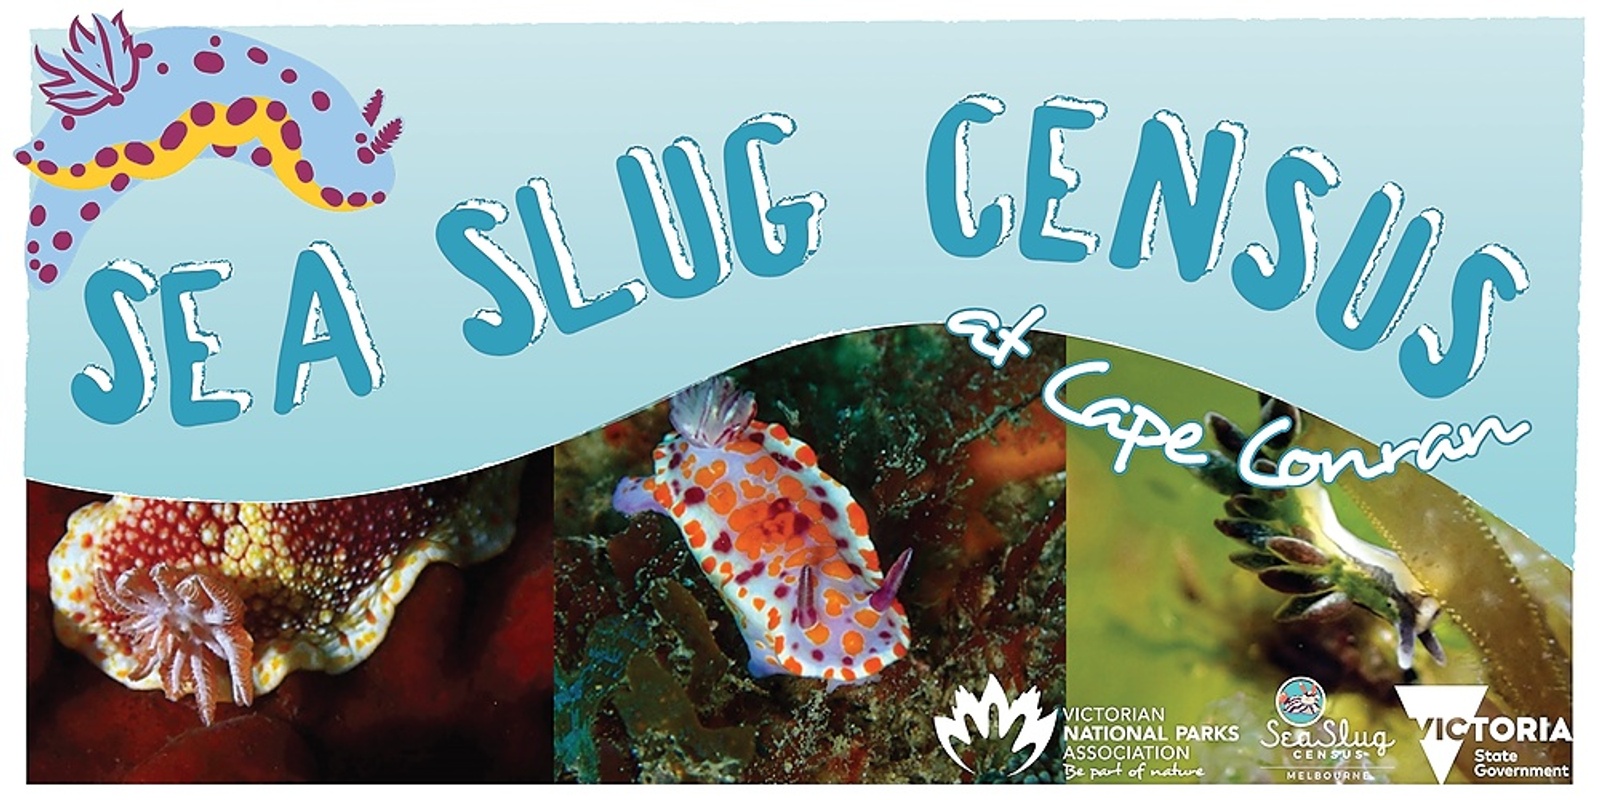 Banner image for Sea Slug Census at Cape Conran